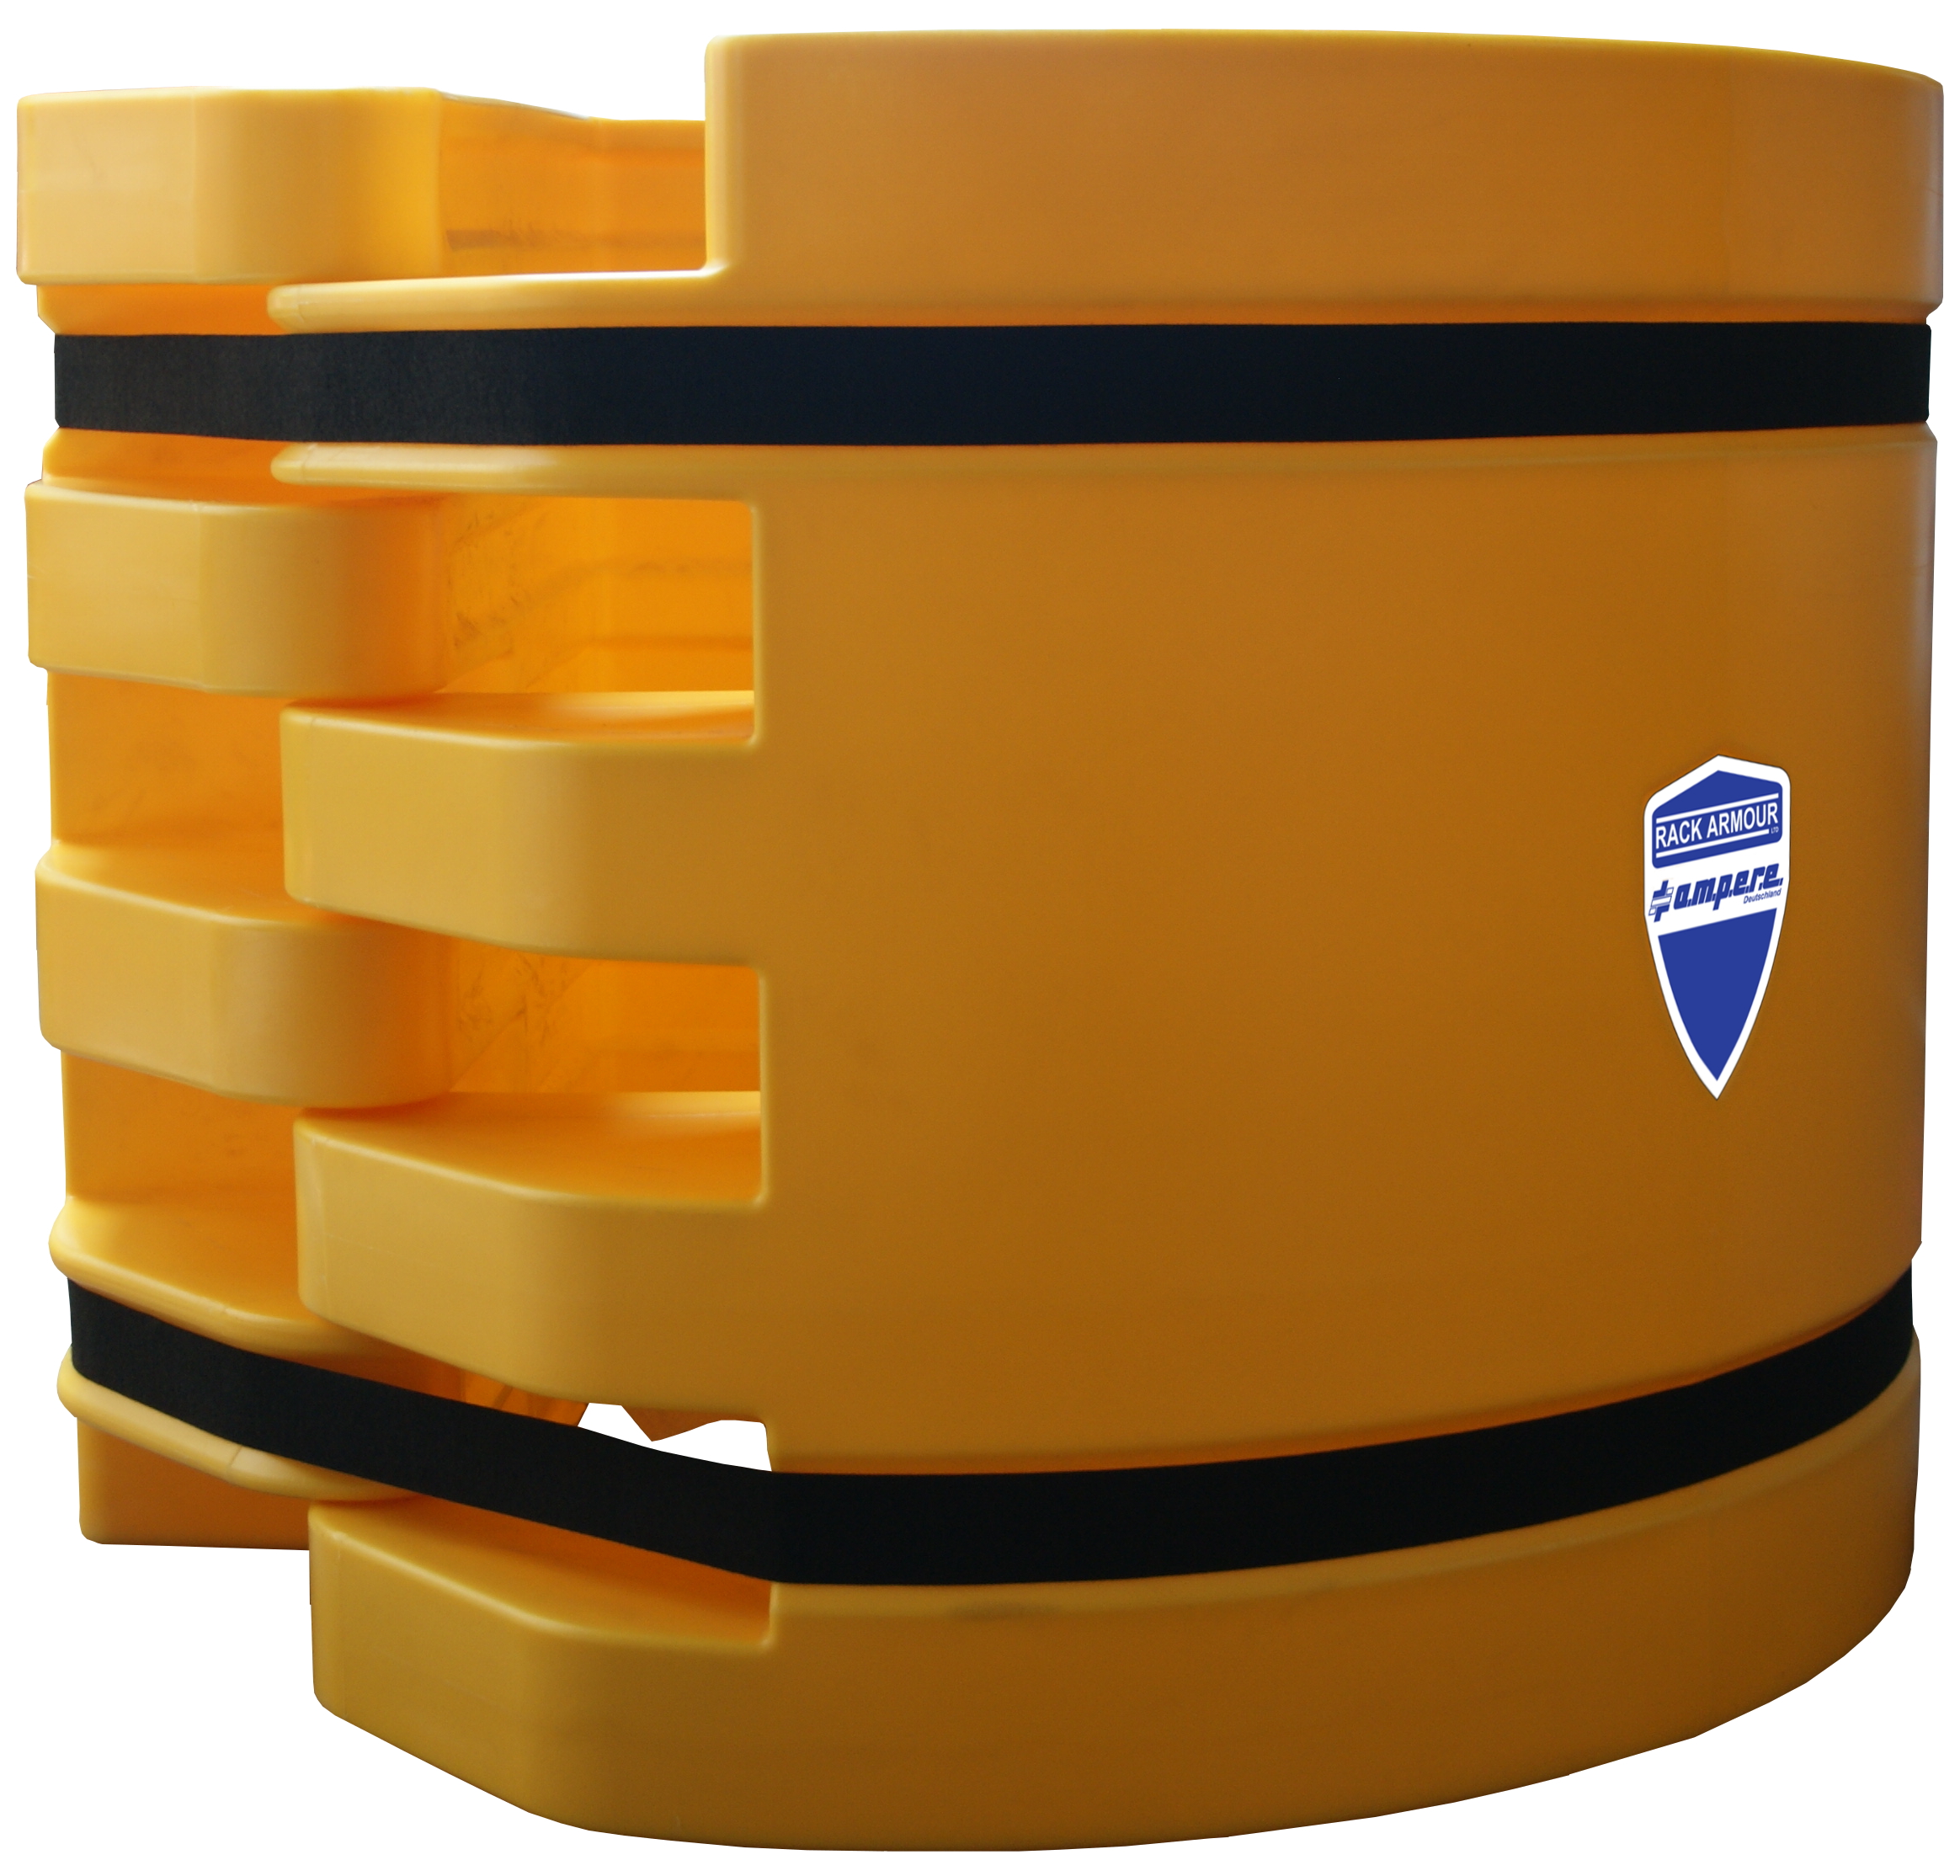 Mobiler Säulenschutz mit Klettverschluss zum Schutz vor Anfahrschäden im Innen- und Außenbereich | Höhe 80cm, Säulenmaß 35-50cm | HDPE Kunststoff | Inkl. Montagematerial